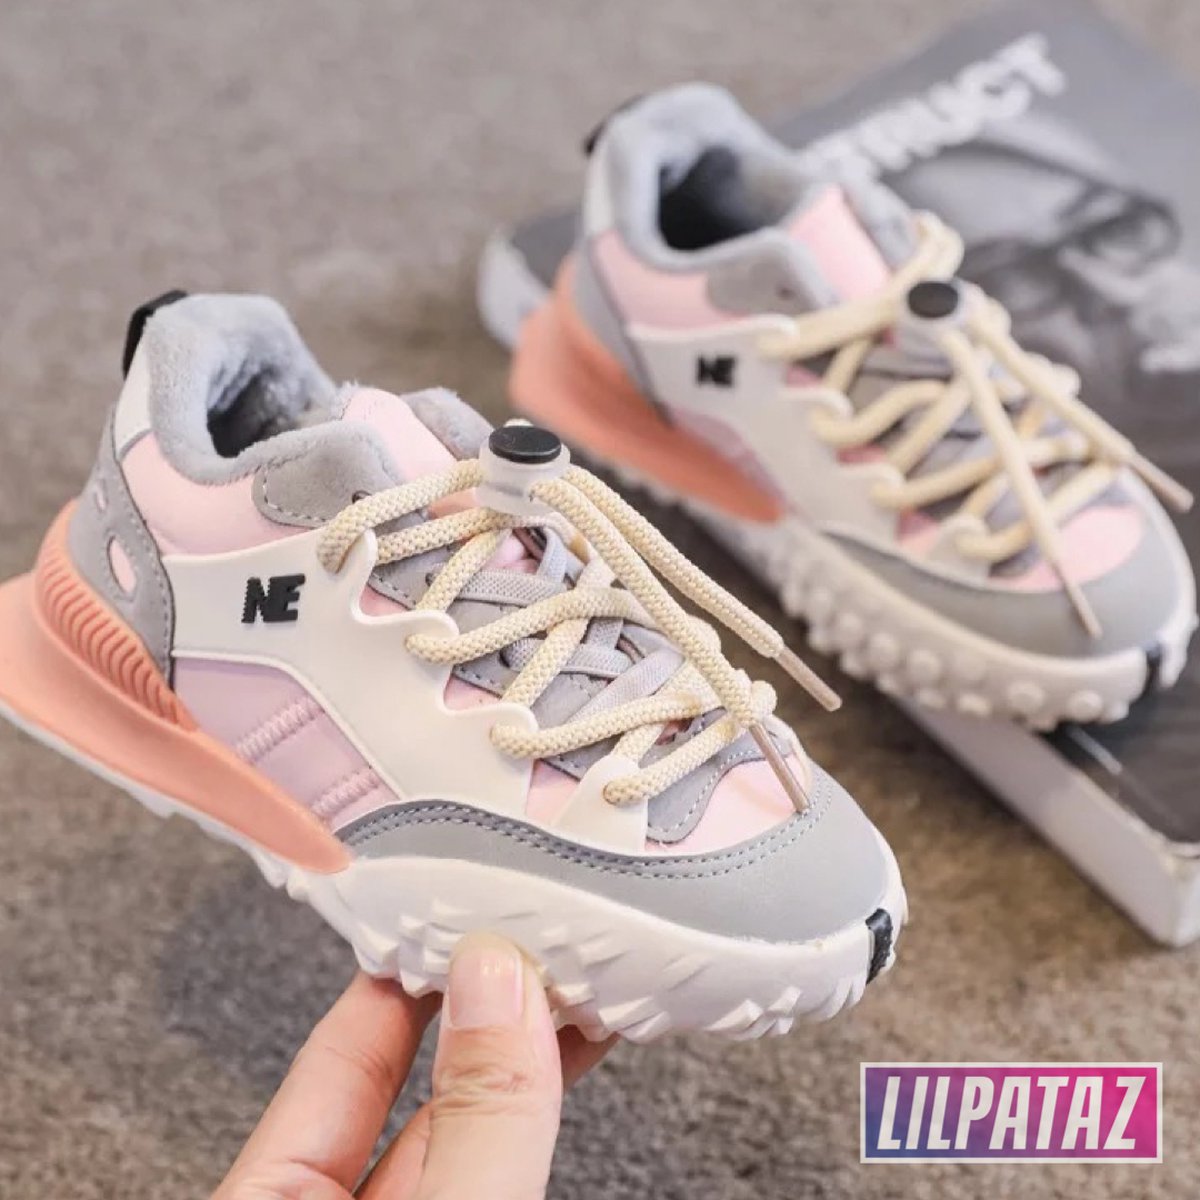 LilPataz Moon Spikes - Lage sneakers - meisjes kids kinderen - Roze Wit - Maat 27